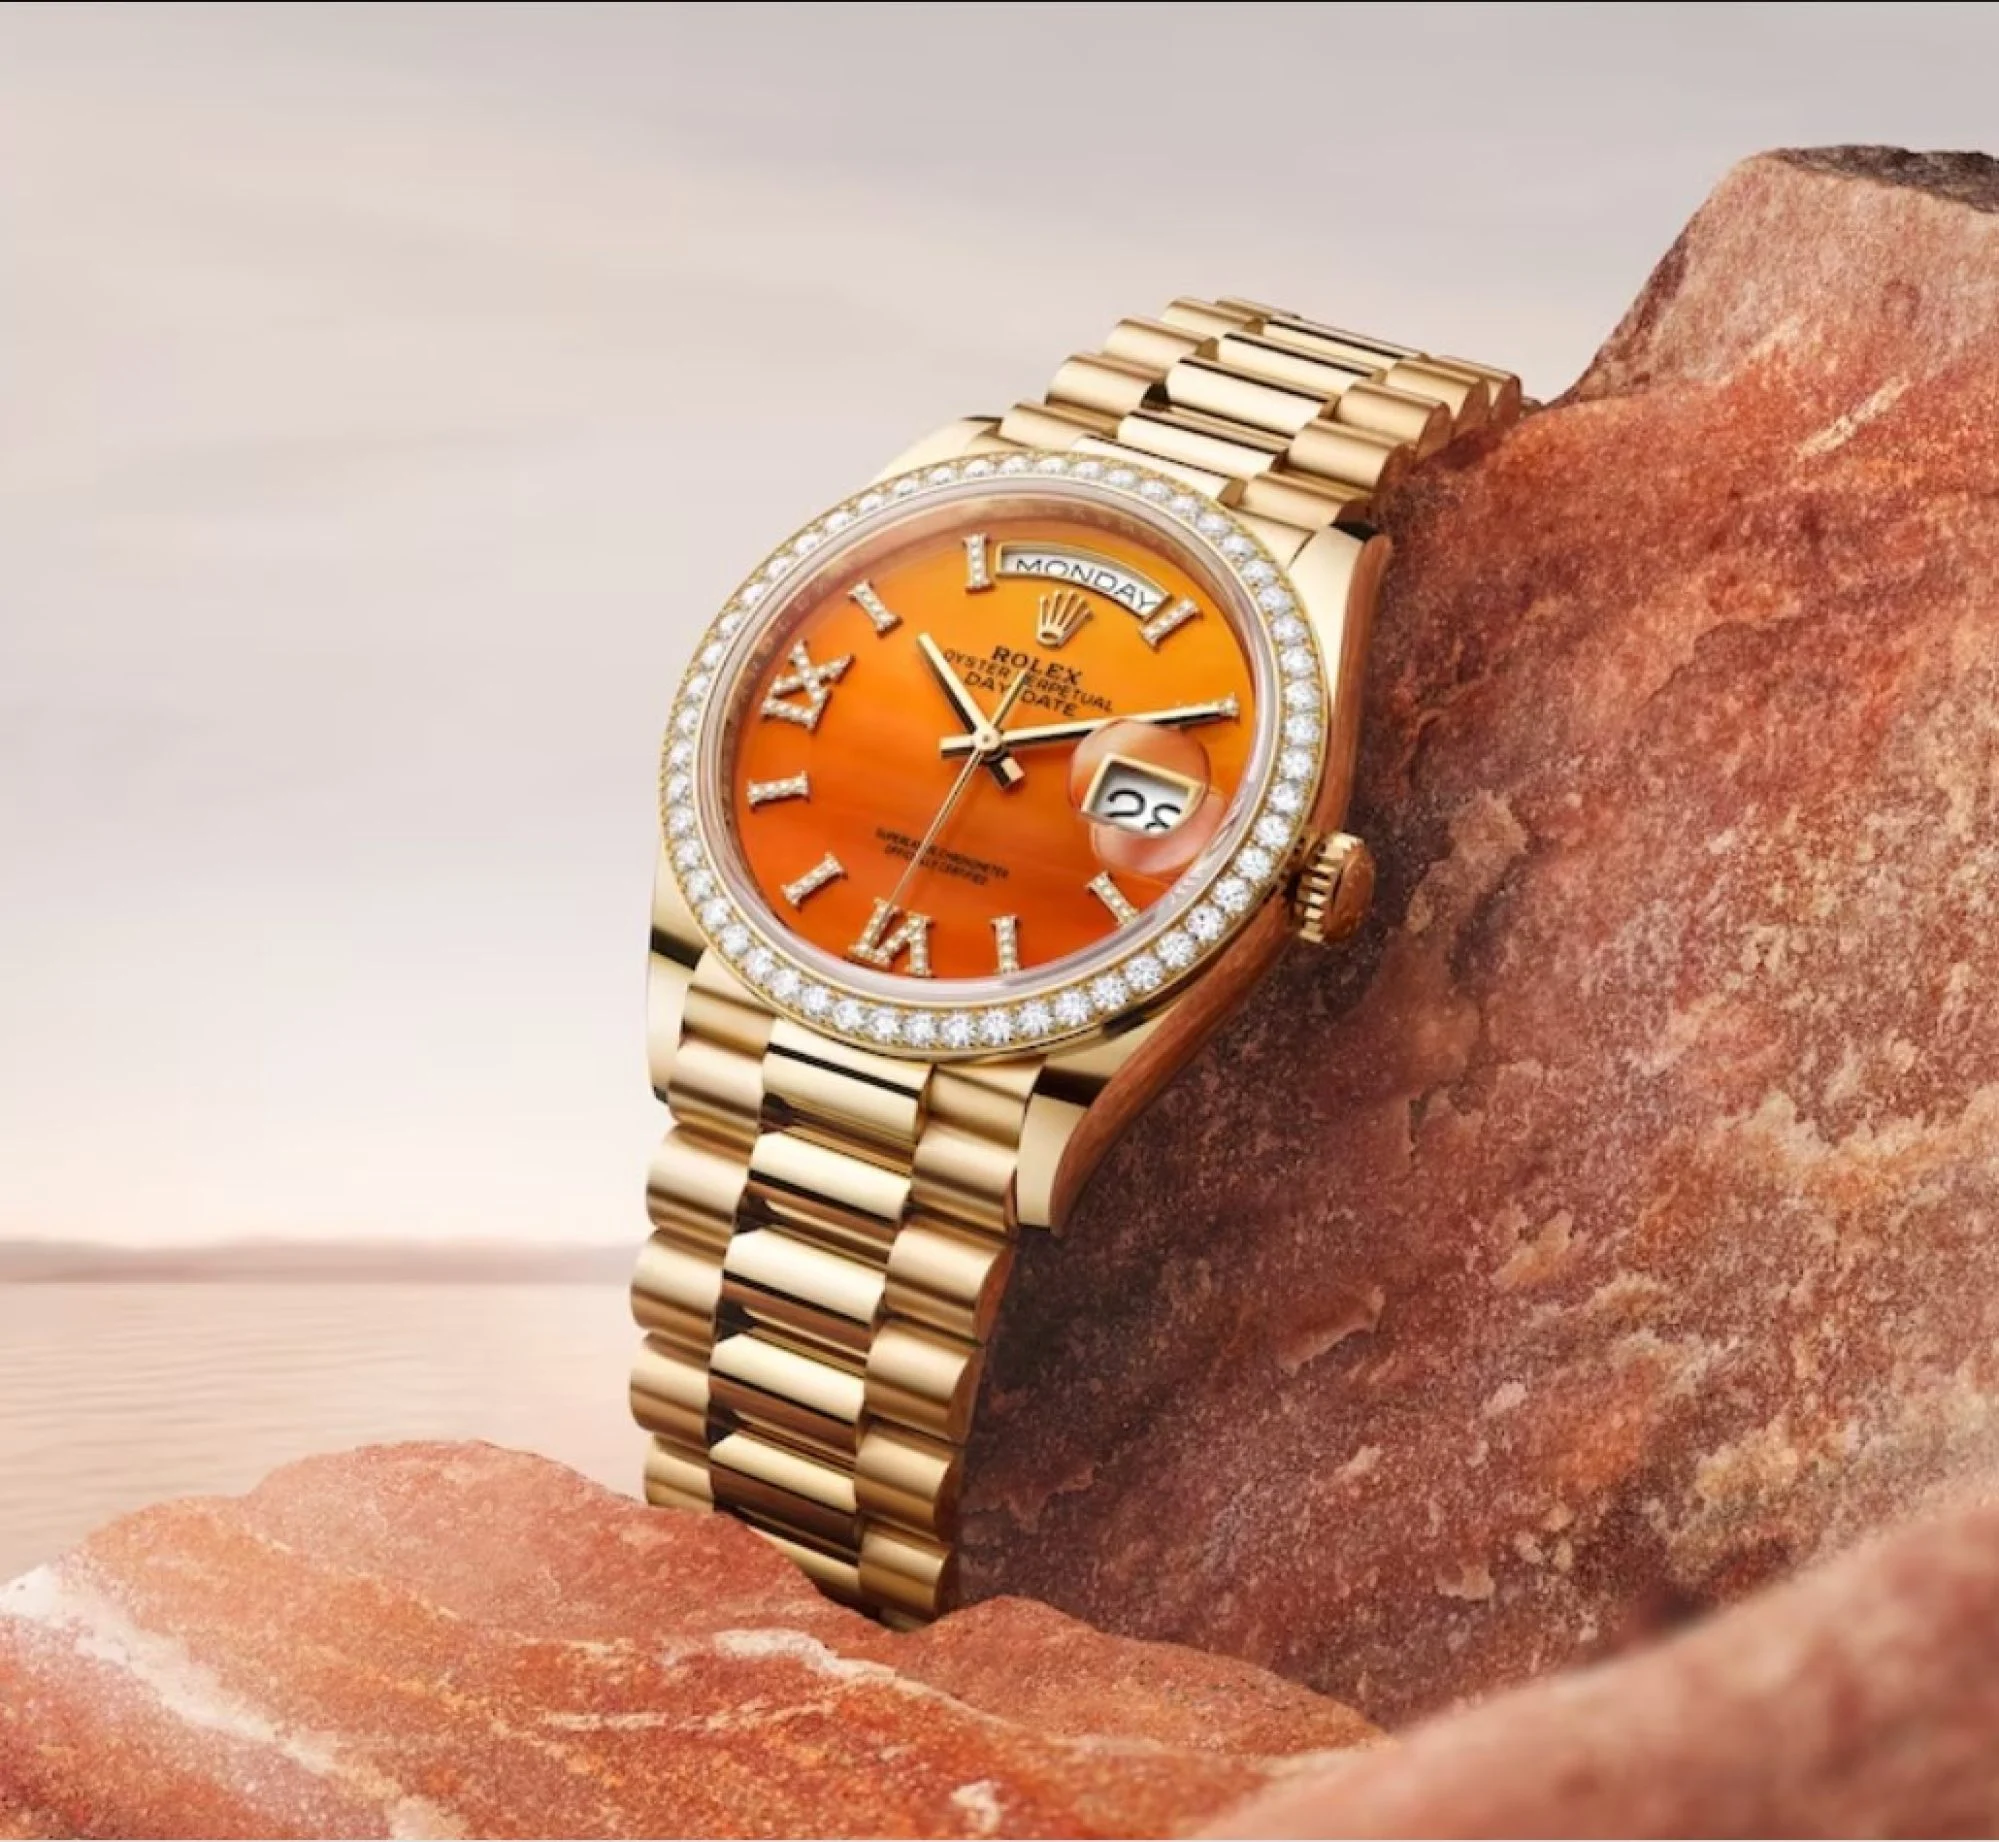 Часы Rolex Oyster Perpetual Day-Date олицетворяют престиж и утонченность.  Фото: Ролекс